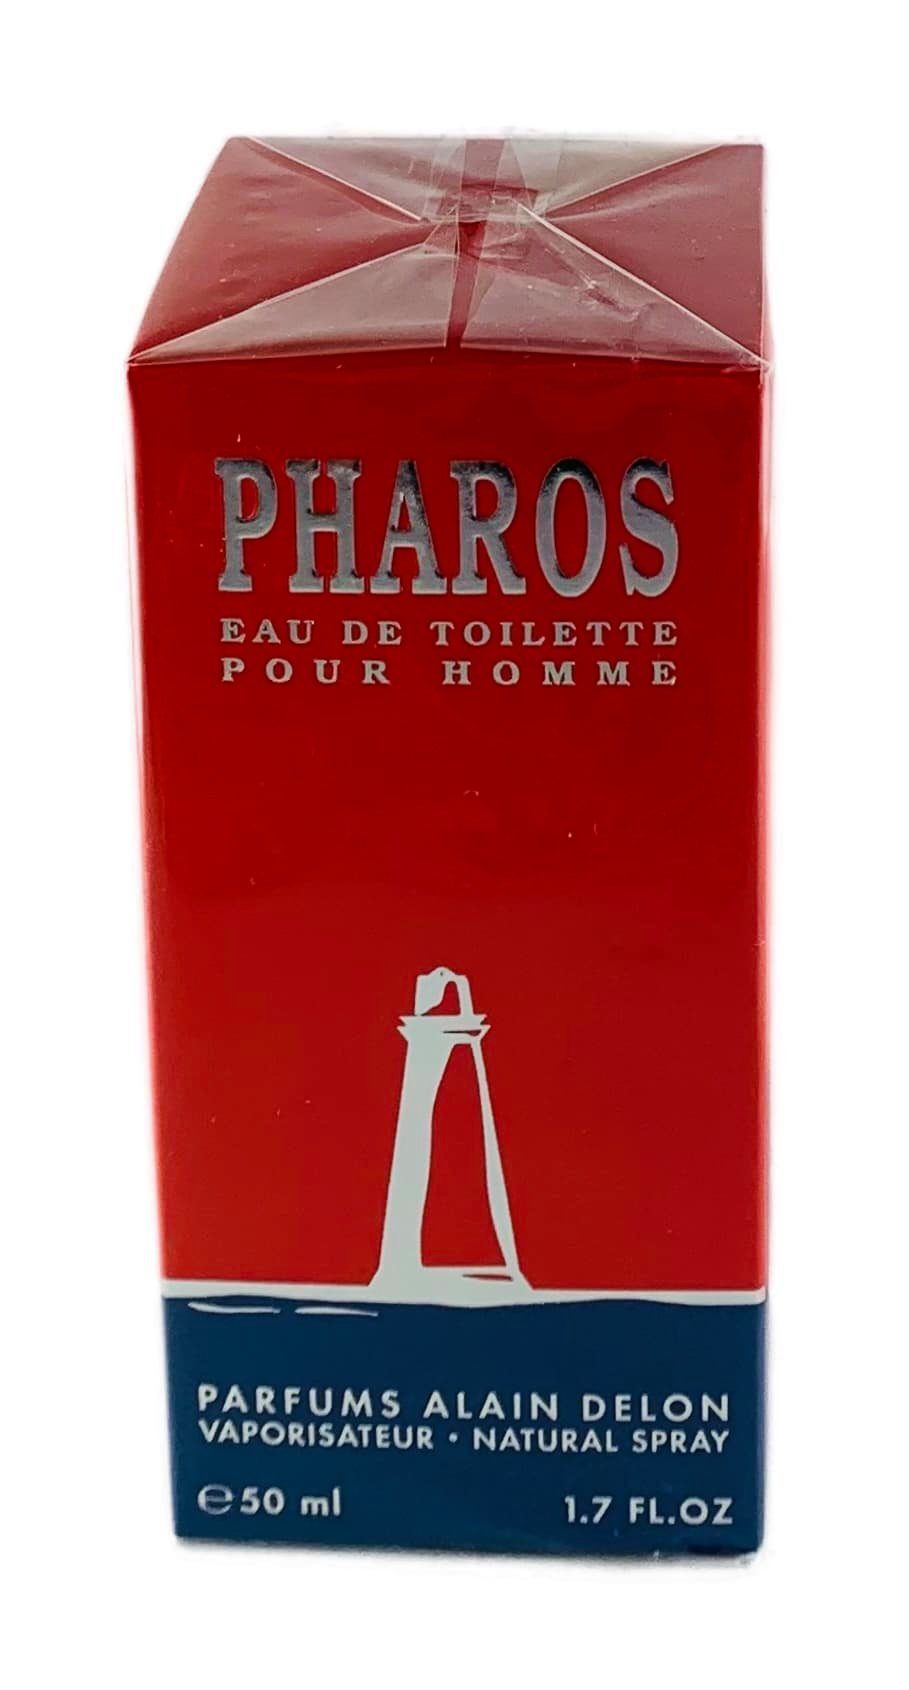 Alain Delon Eau de Toilette Alain Delon Pharos pour Homme Eau de Toilette Spray 50 ml